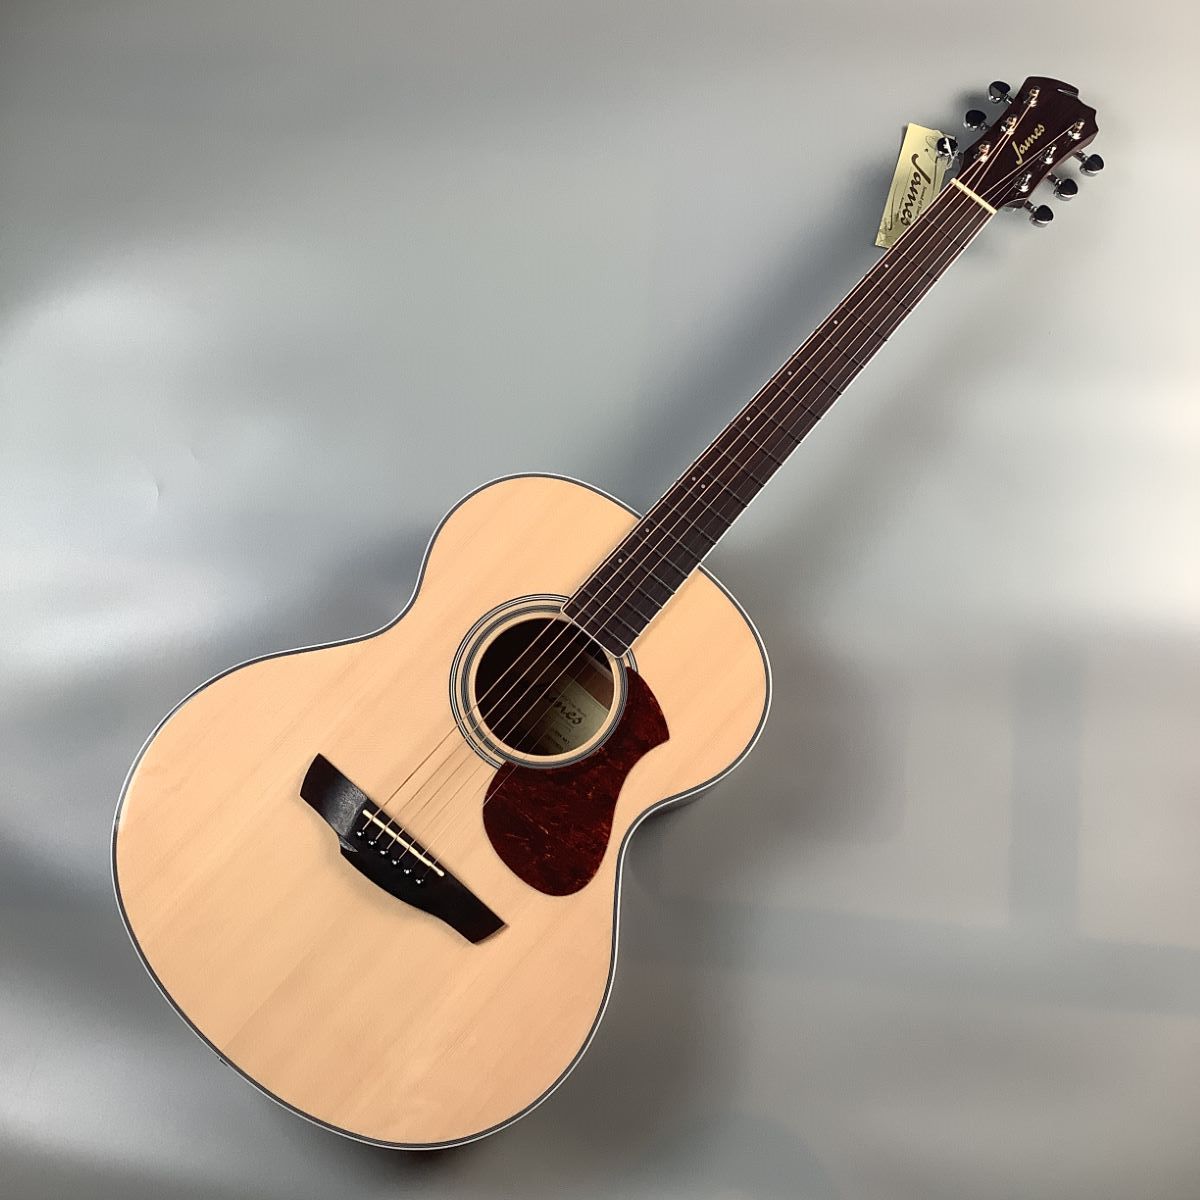 James J-300A NAT アコースティックギター出品いたします - jkc78.com